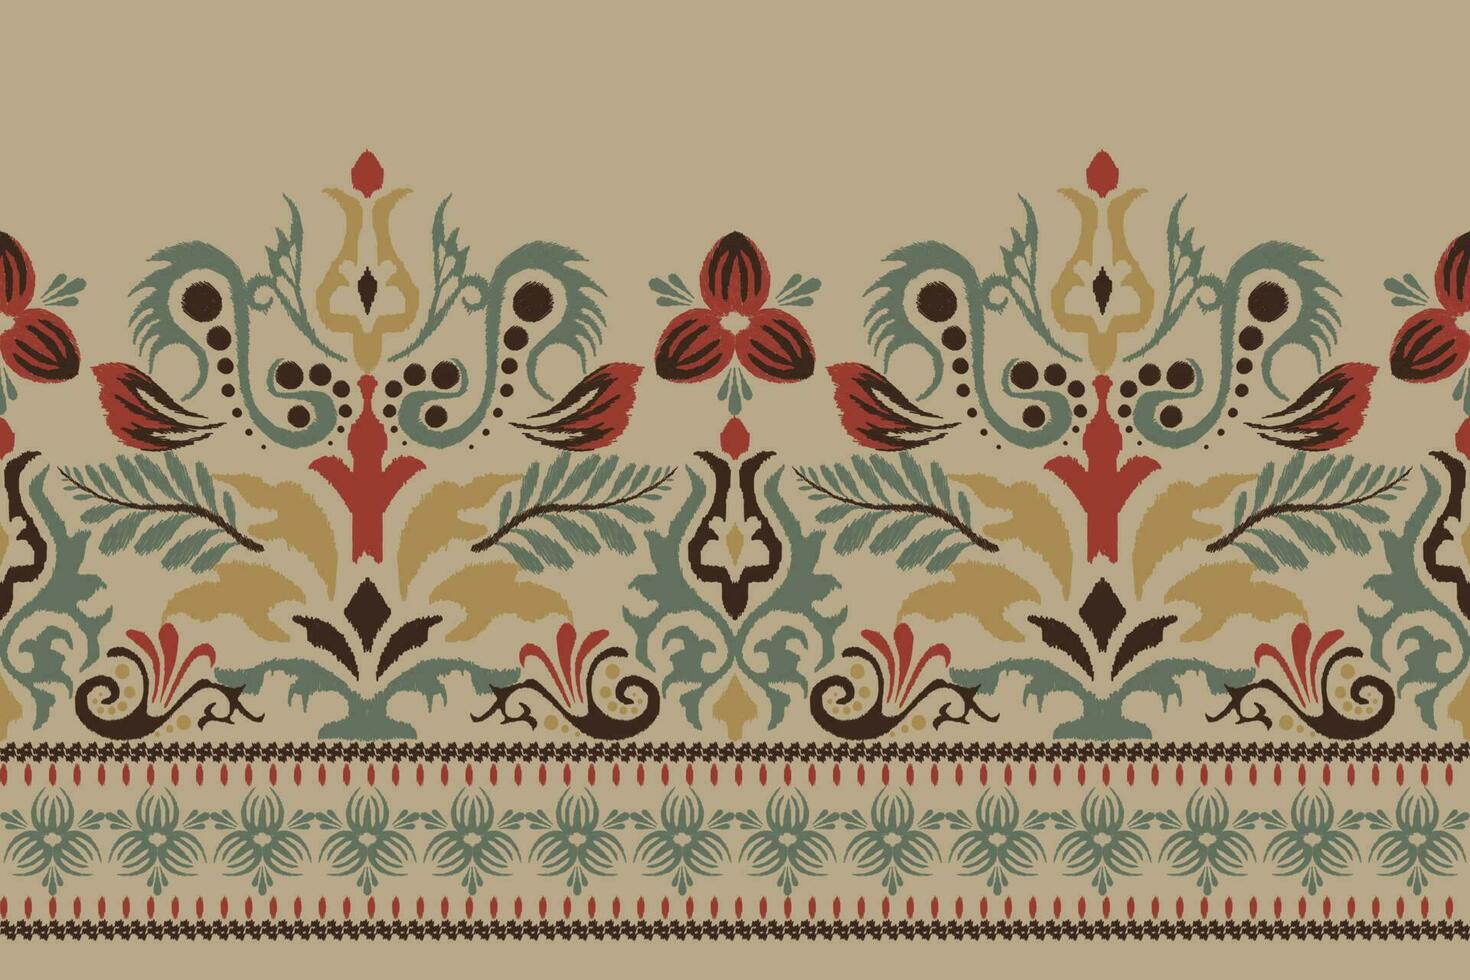 ikat blommig paisley broderi på brun bakgrund.ikat etnisk orientalisk mönster traditionell.aztec stil abstrakt vektor illustration.design för textur, tyg, kläder, inslagning, dekoration, sarong, halsduk